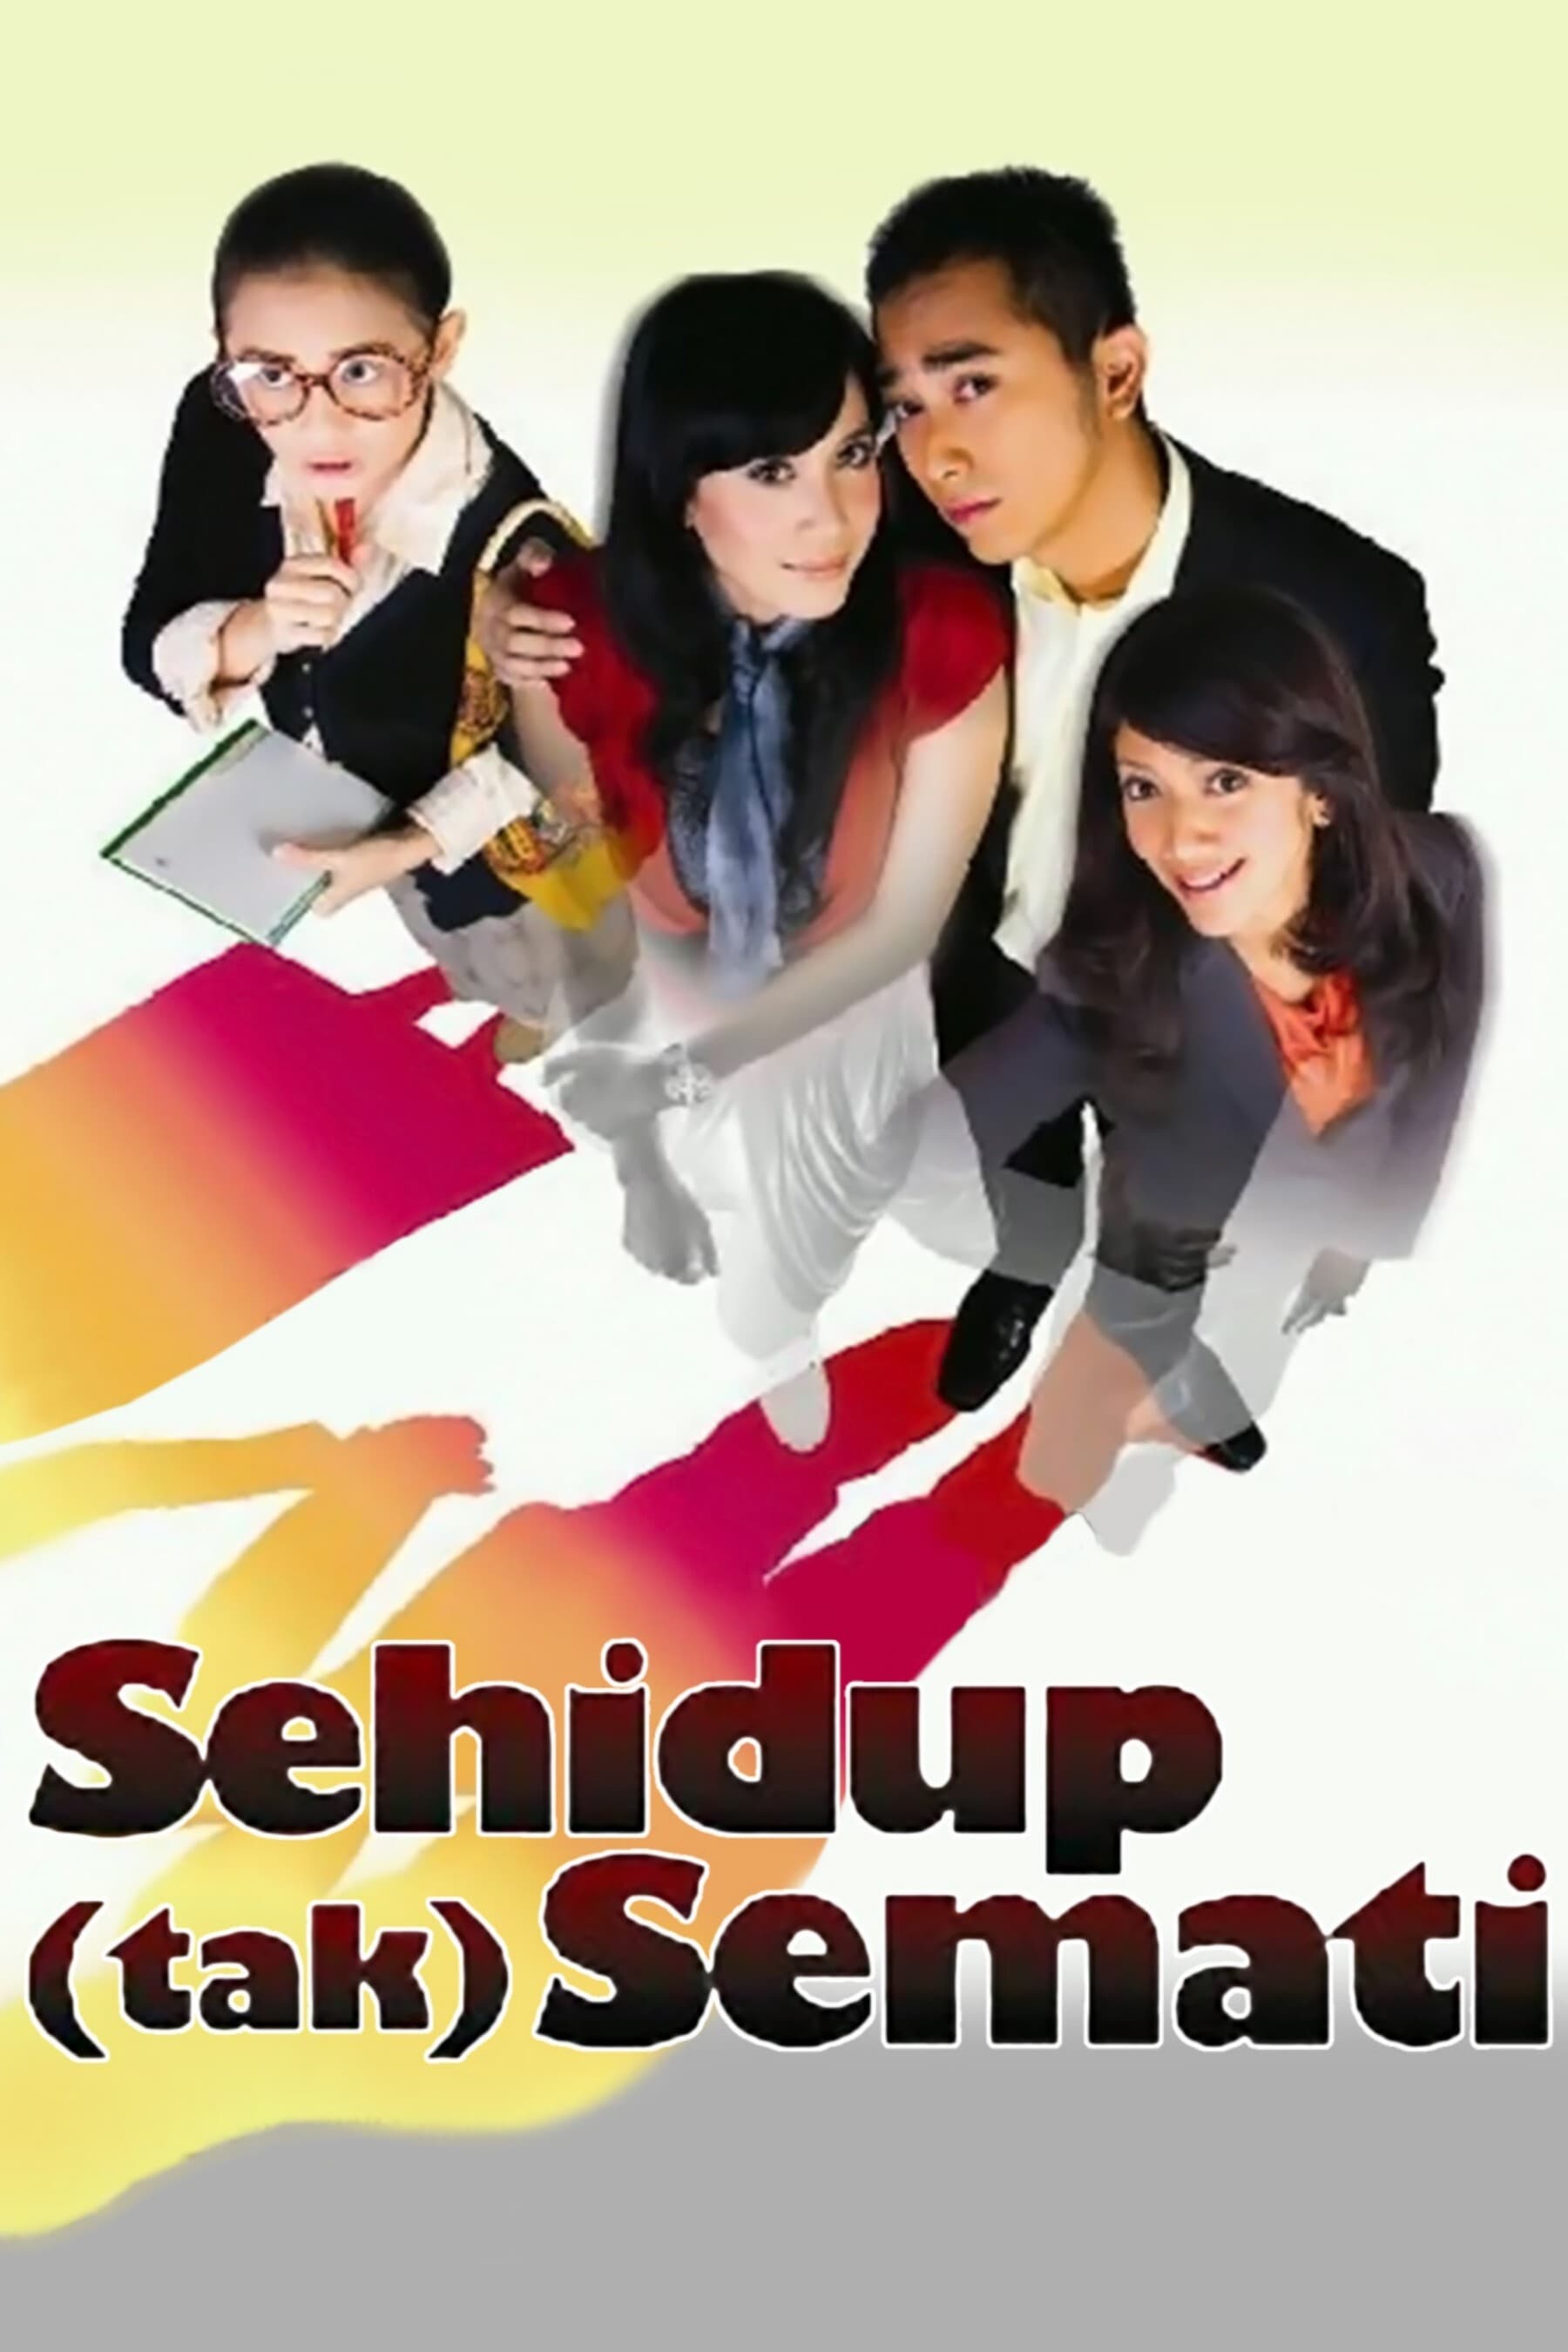 Sehidup (Tak) Semati (2010)